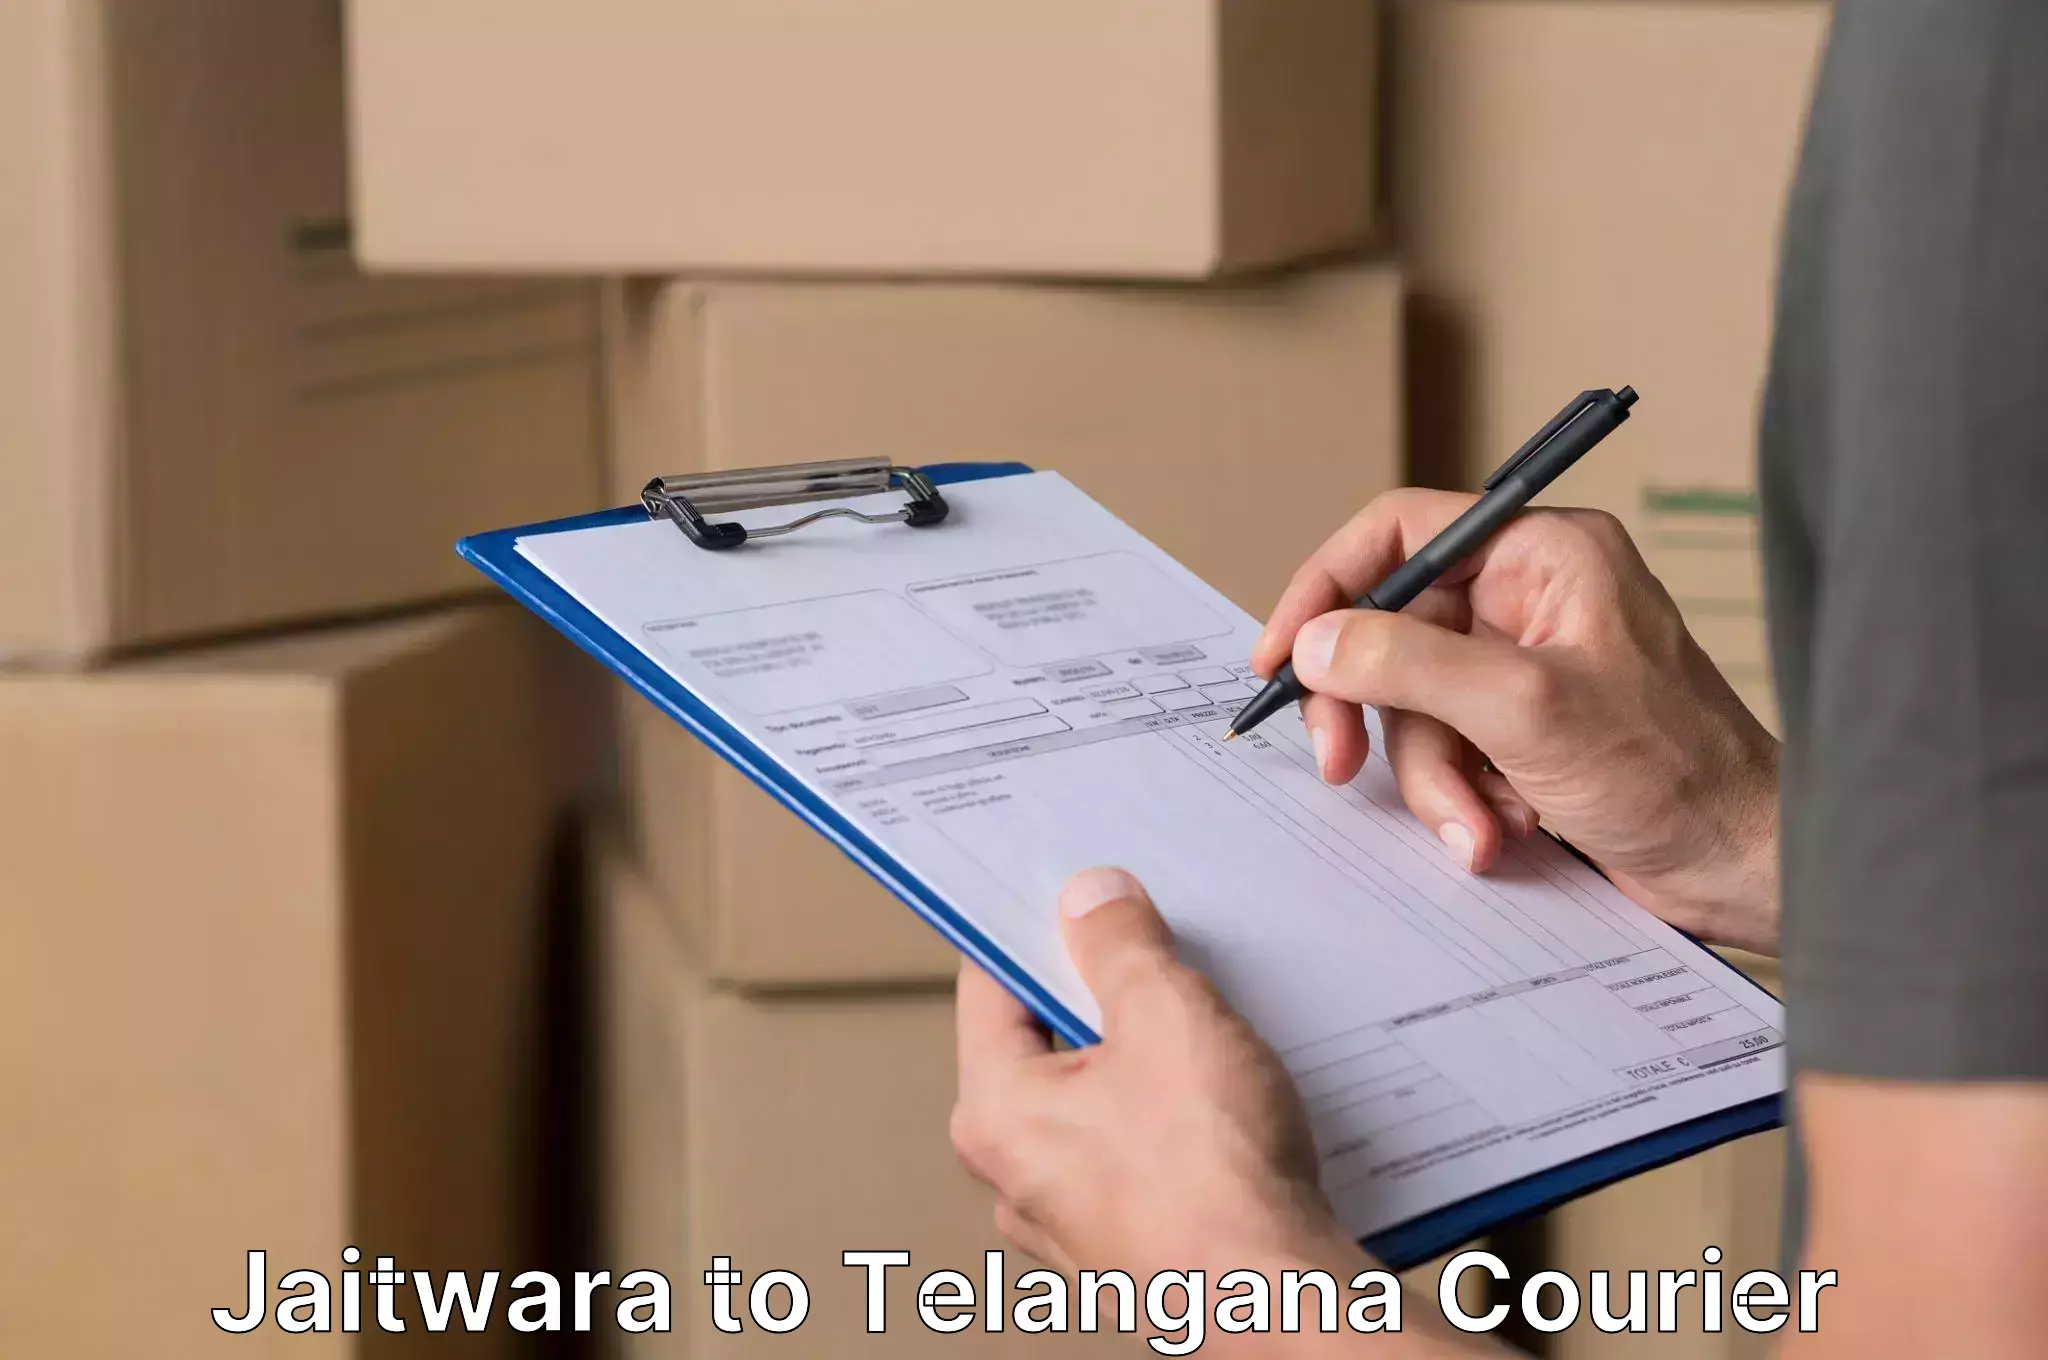 Furniture transport company Jaitwara to Telangana